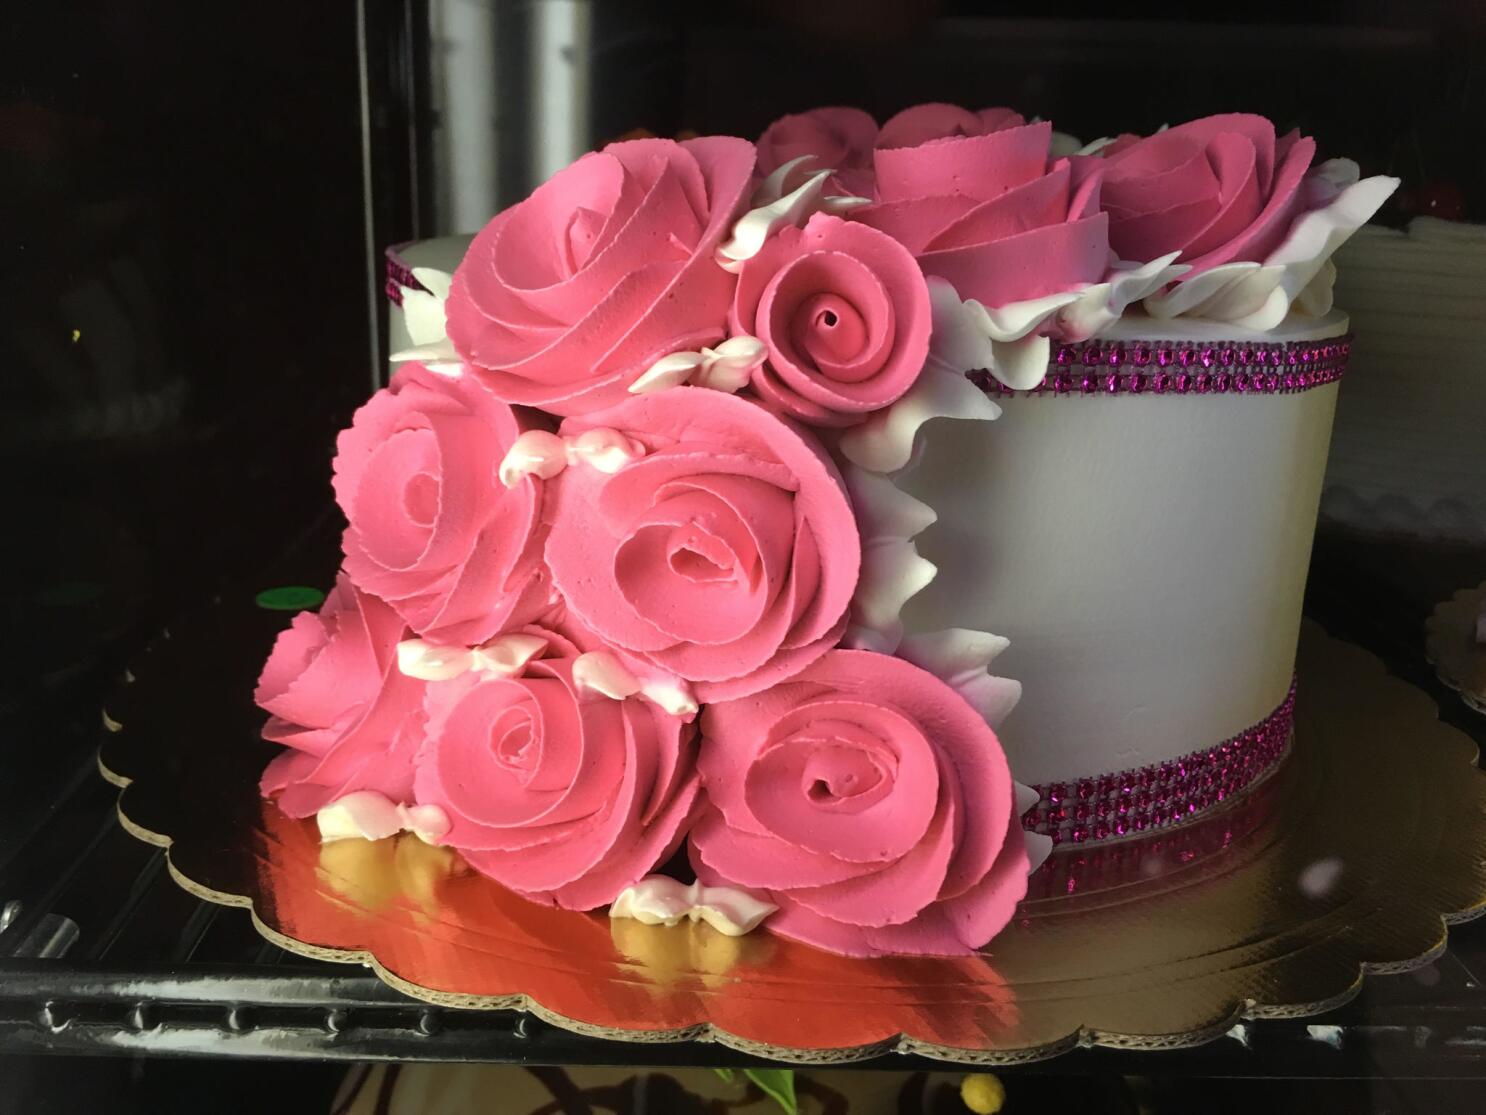 Pink Handbag Cake  Confessions of a Cake Addict